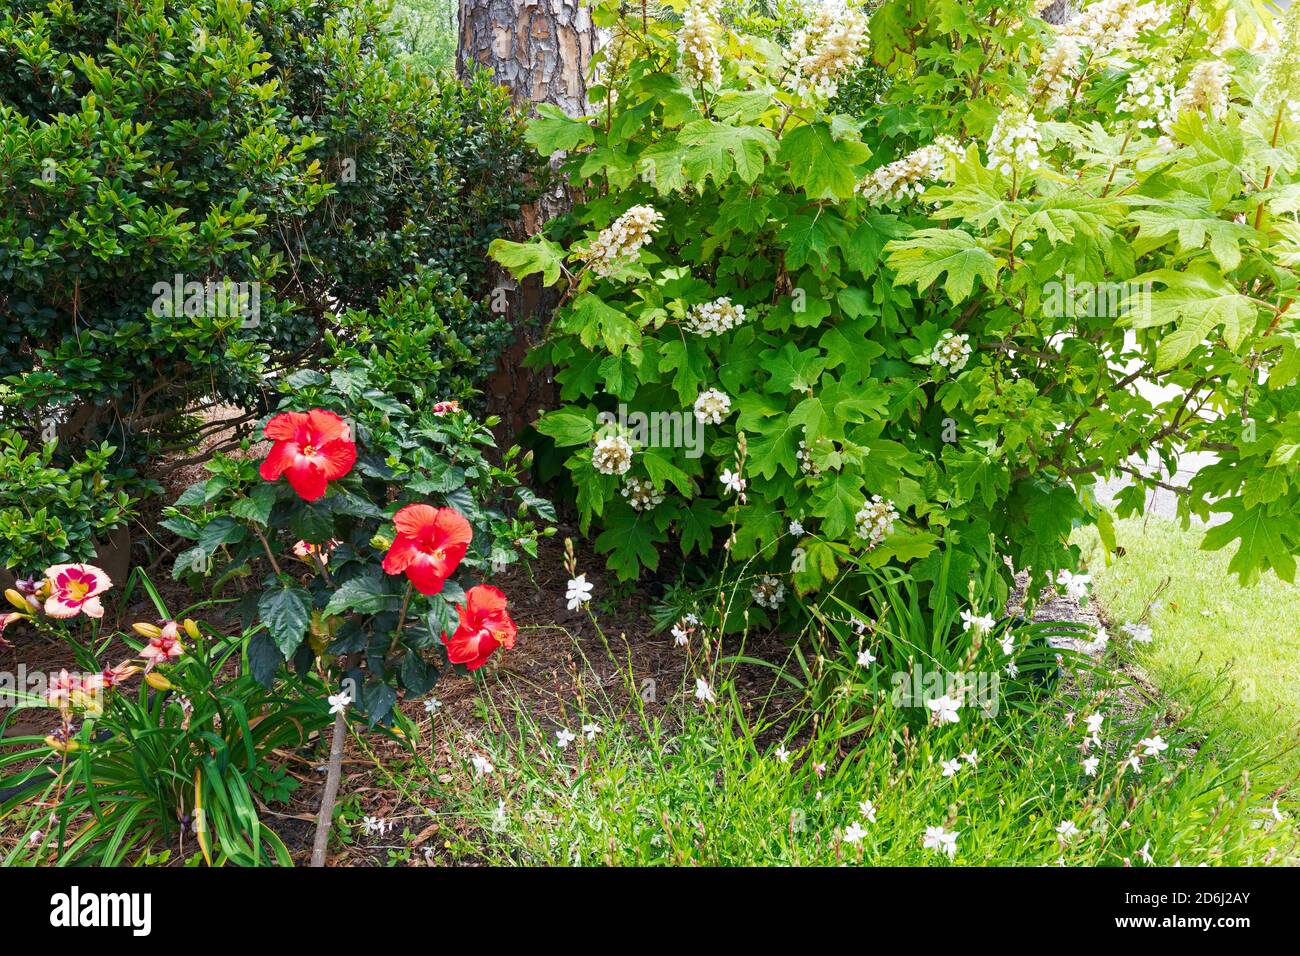 Ein Garten in South Carolina im Mai. Eichenblatt Hortensien, gaura, Taglilien und Hibiskus in einem bunten Rand. Stockfoto